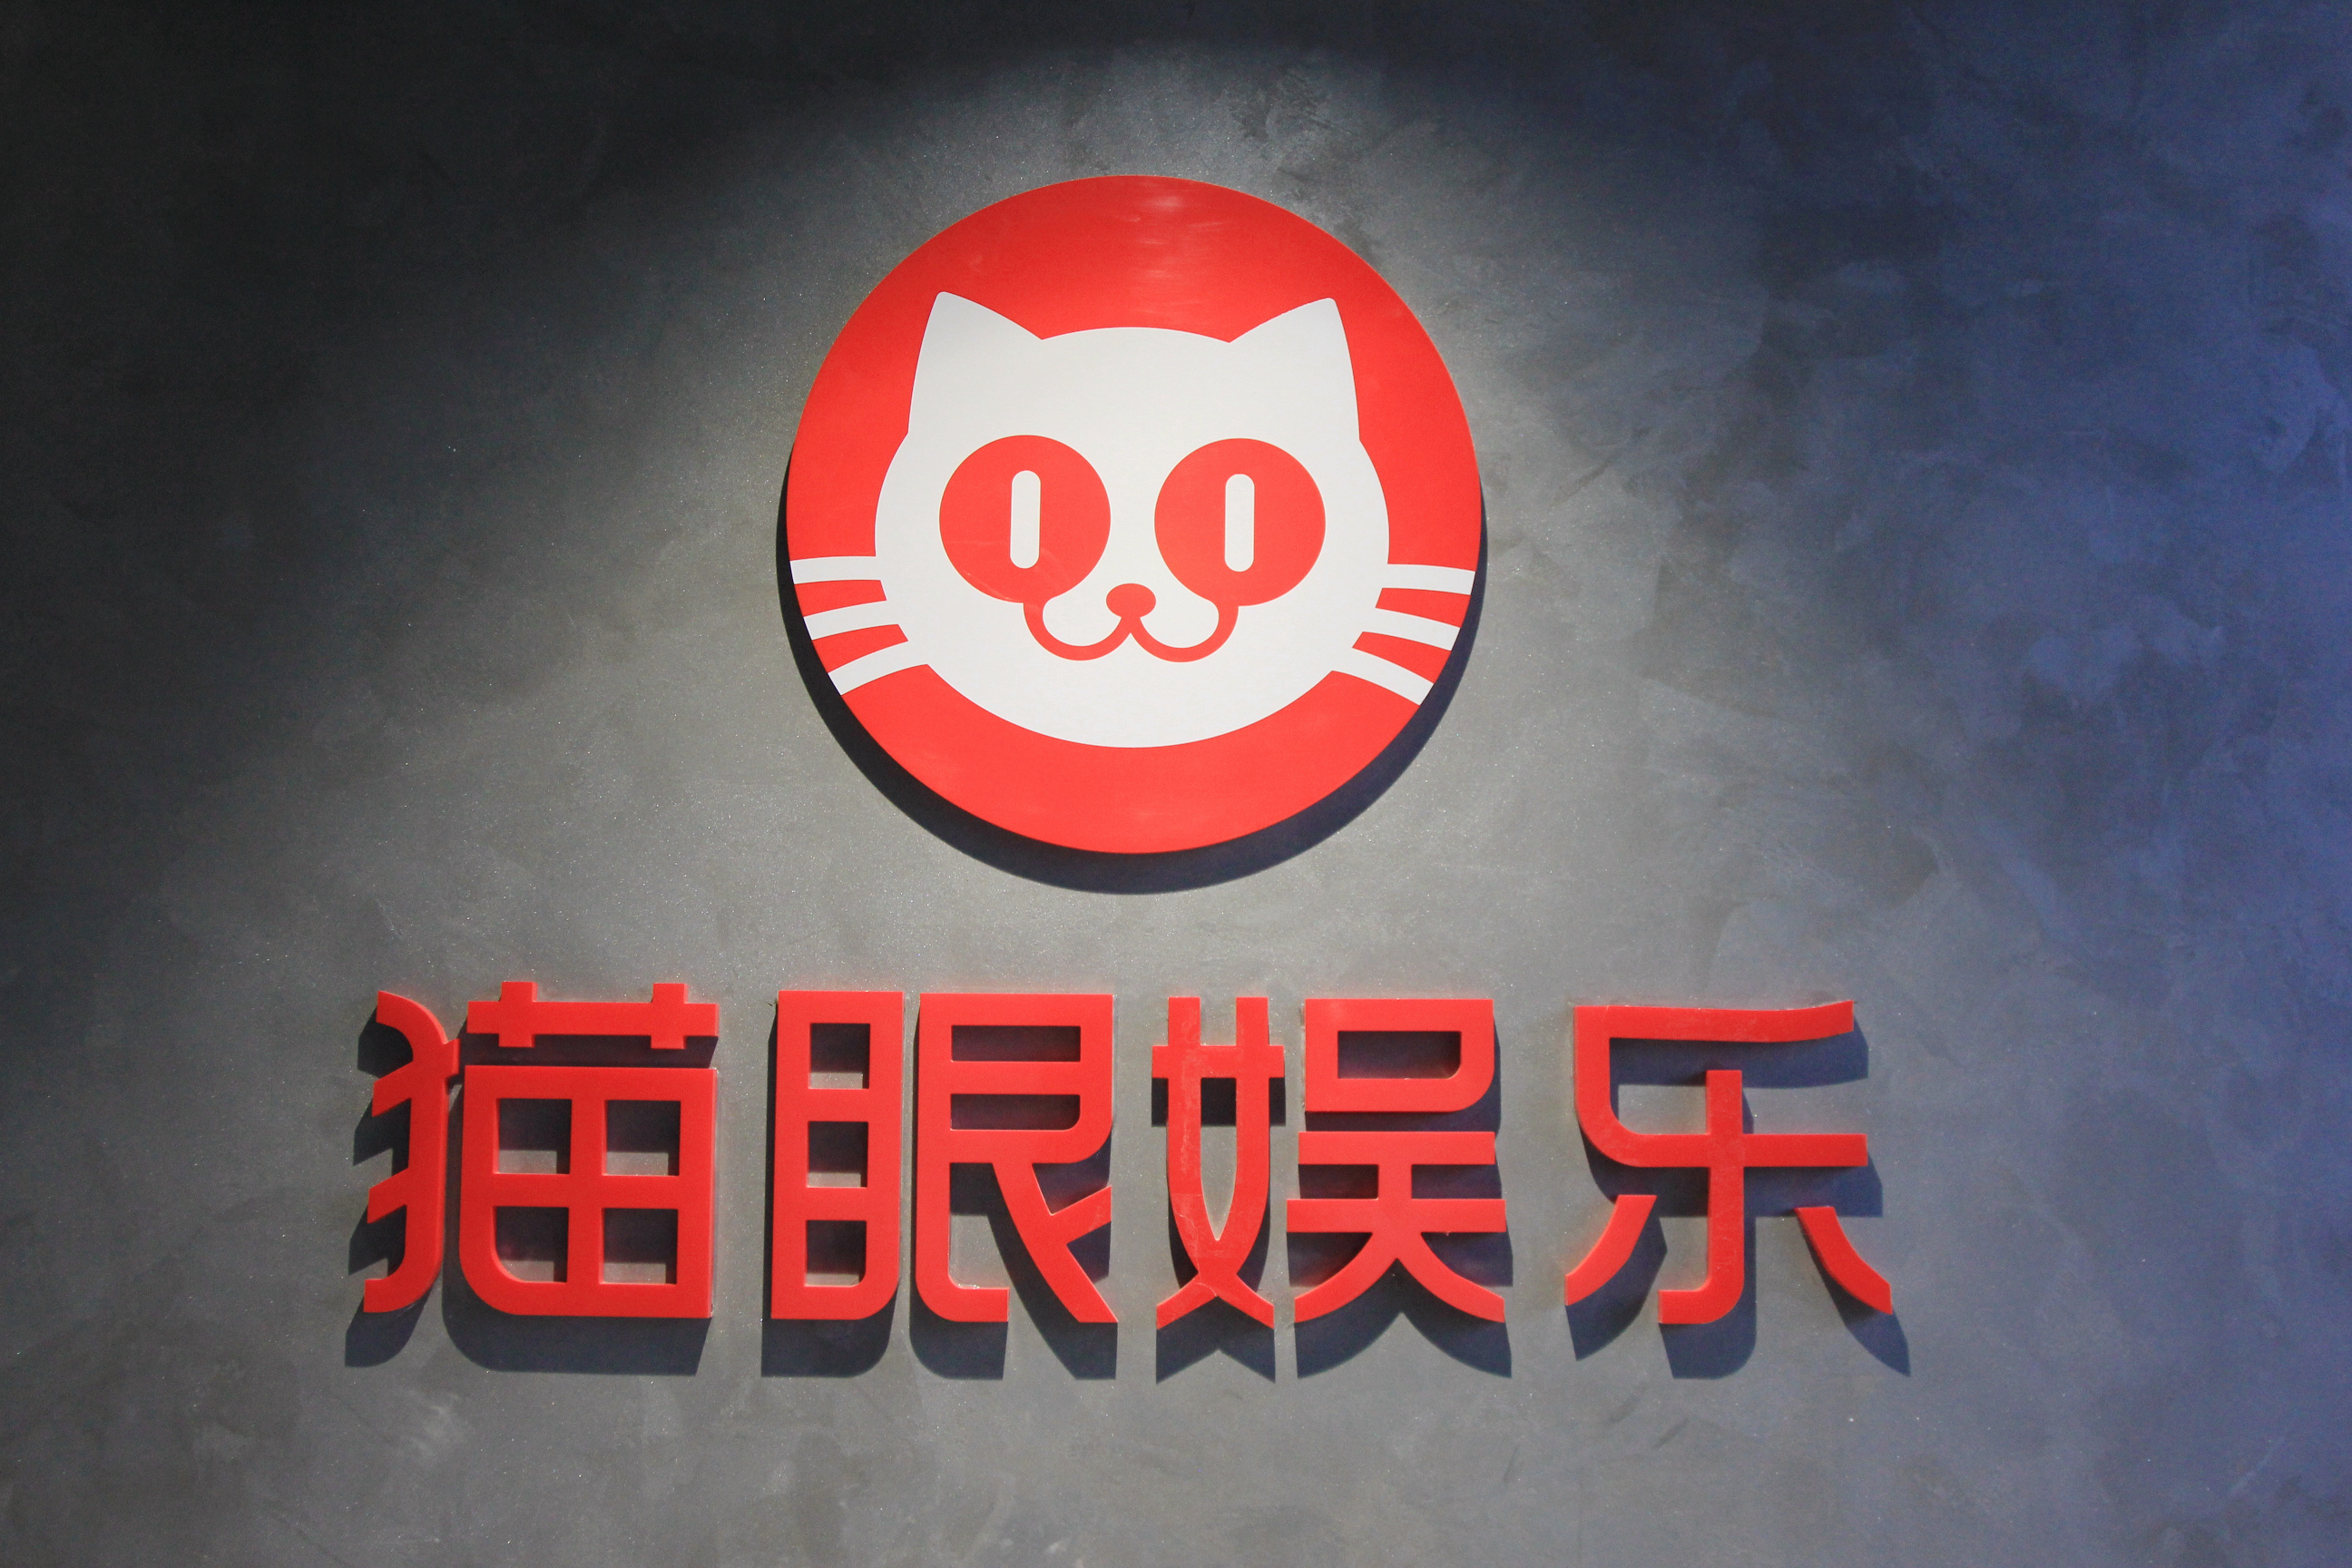 腾猫联盟之后中国最大的全链路文娱消费平台呼之欲出